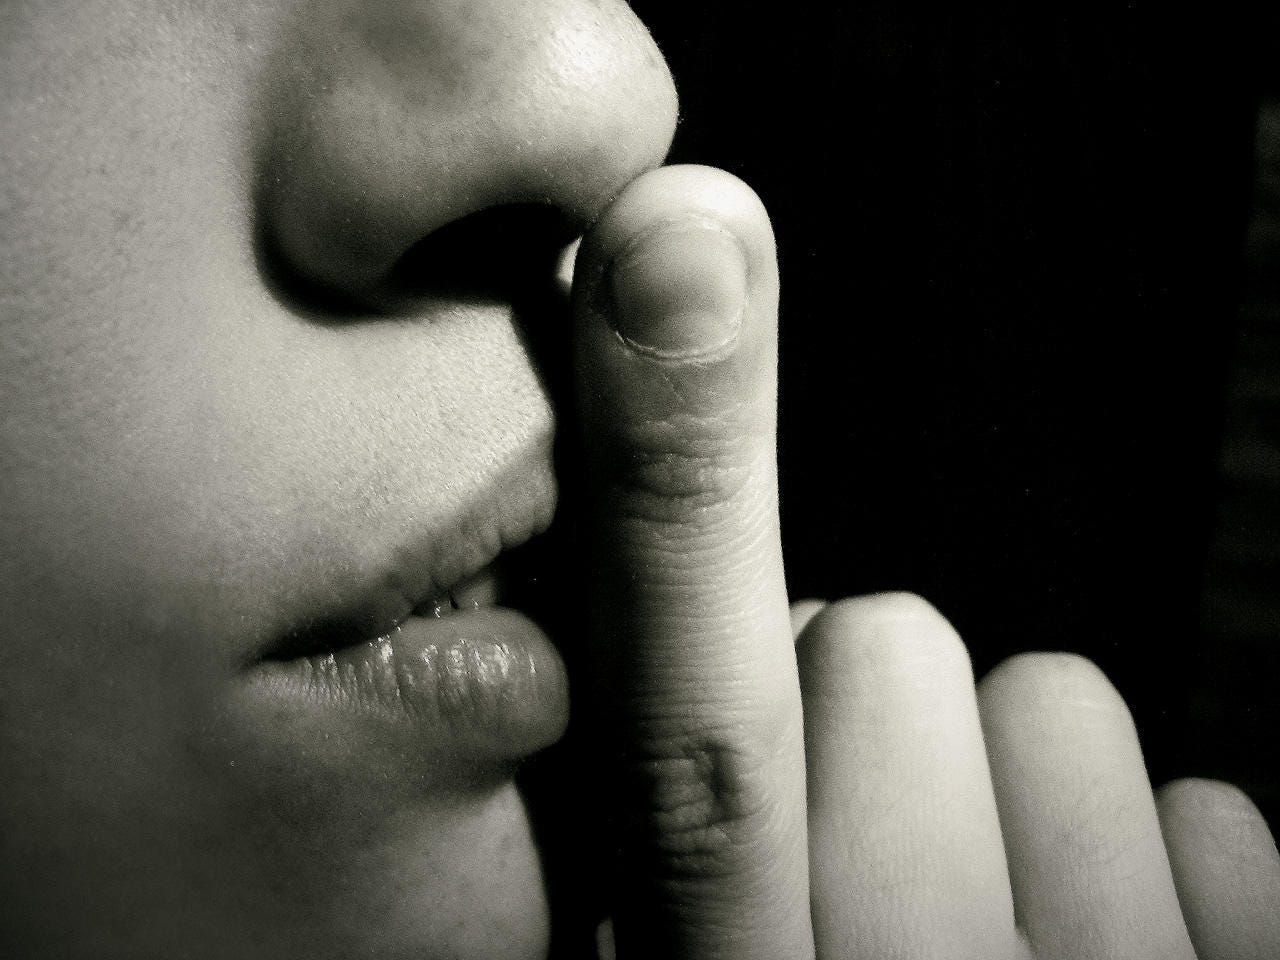 Hacer silencio es tambien un acto creativo | by Jorge Amado Yunes | Medium